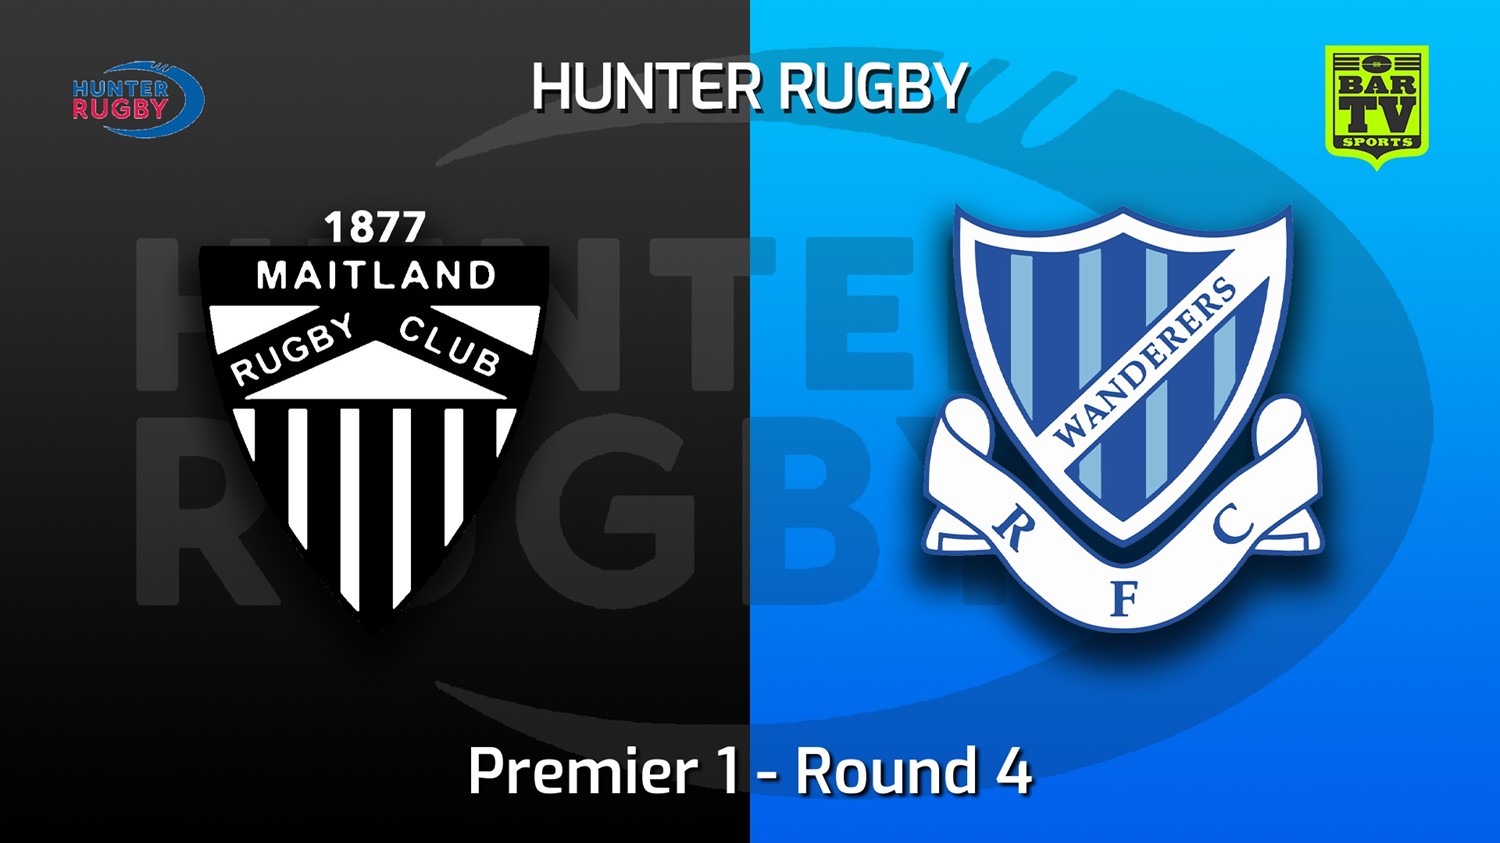 220514-Hunter Rugby Round 4 - Premier 1 - Maitland v Wanderers Slate Image